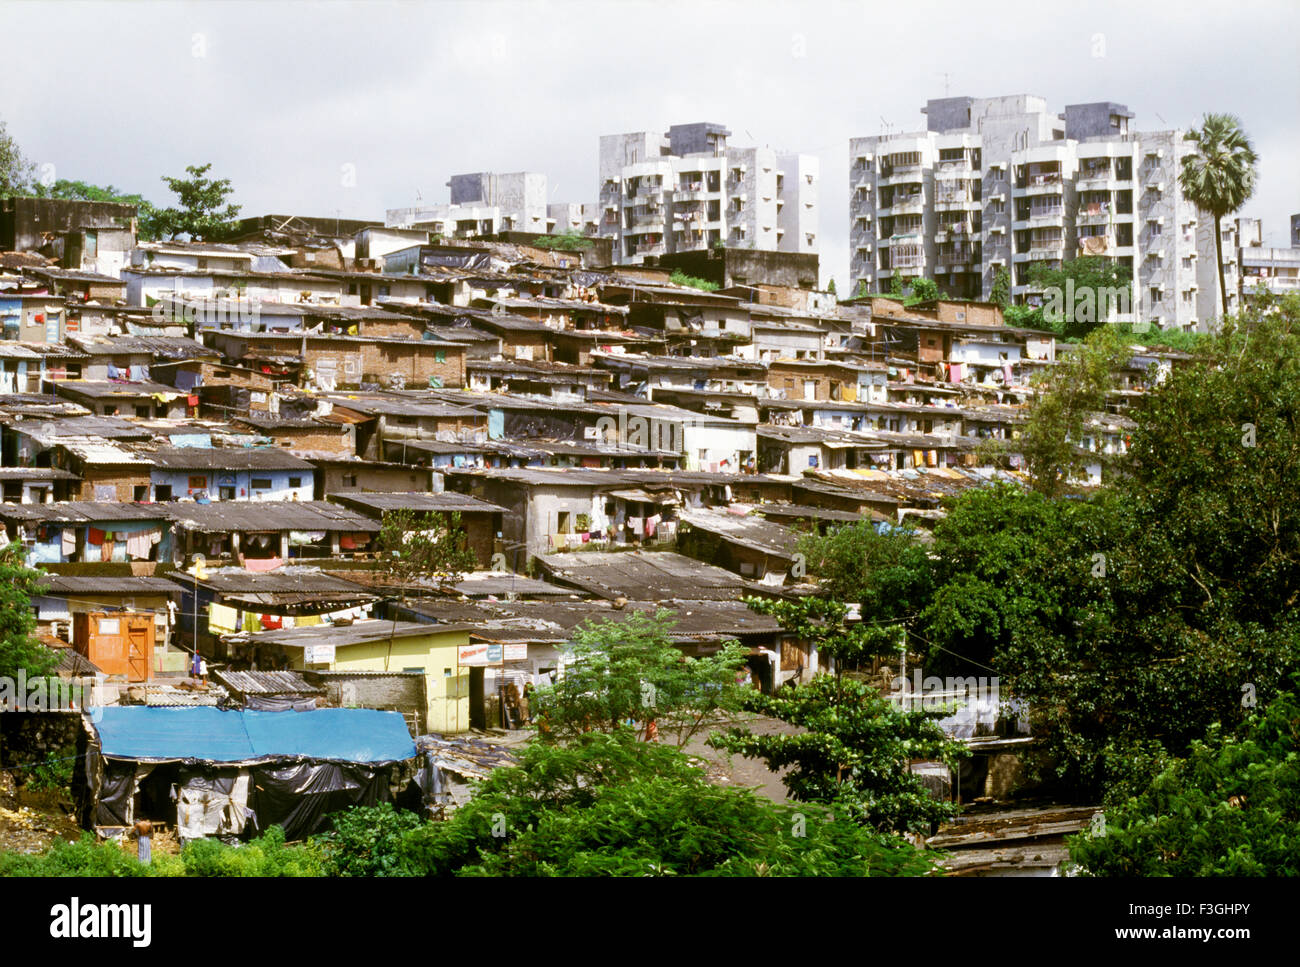 slums-and-high-rise-apartments-mumbai-bombay-maharashtra-india-F3GHPY.jpg